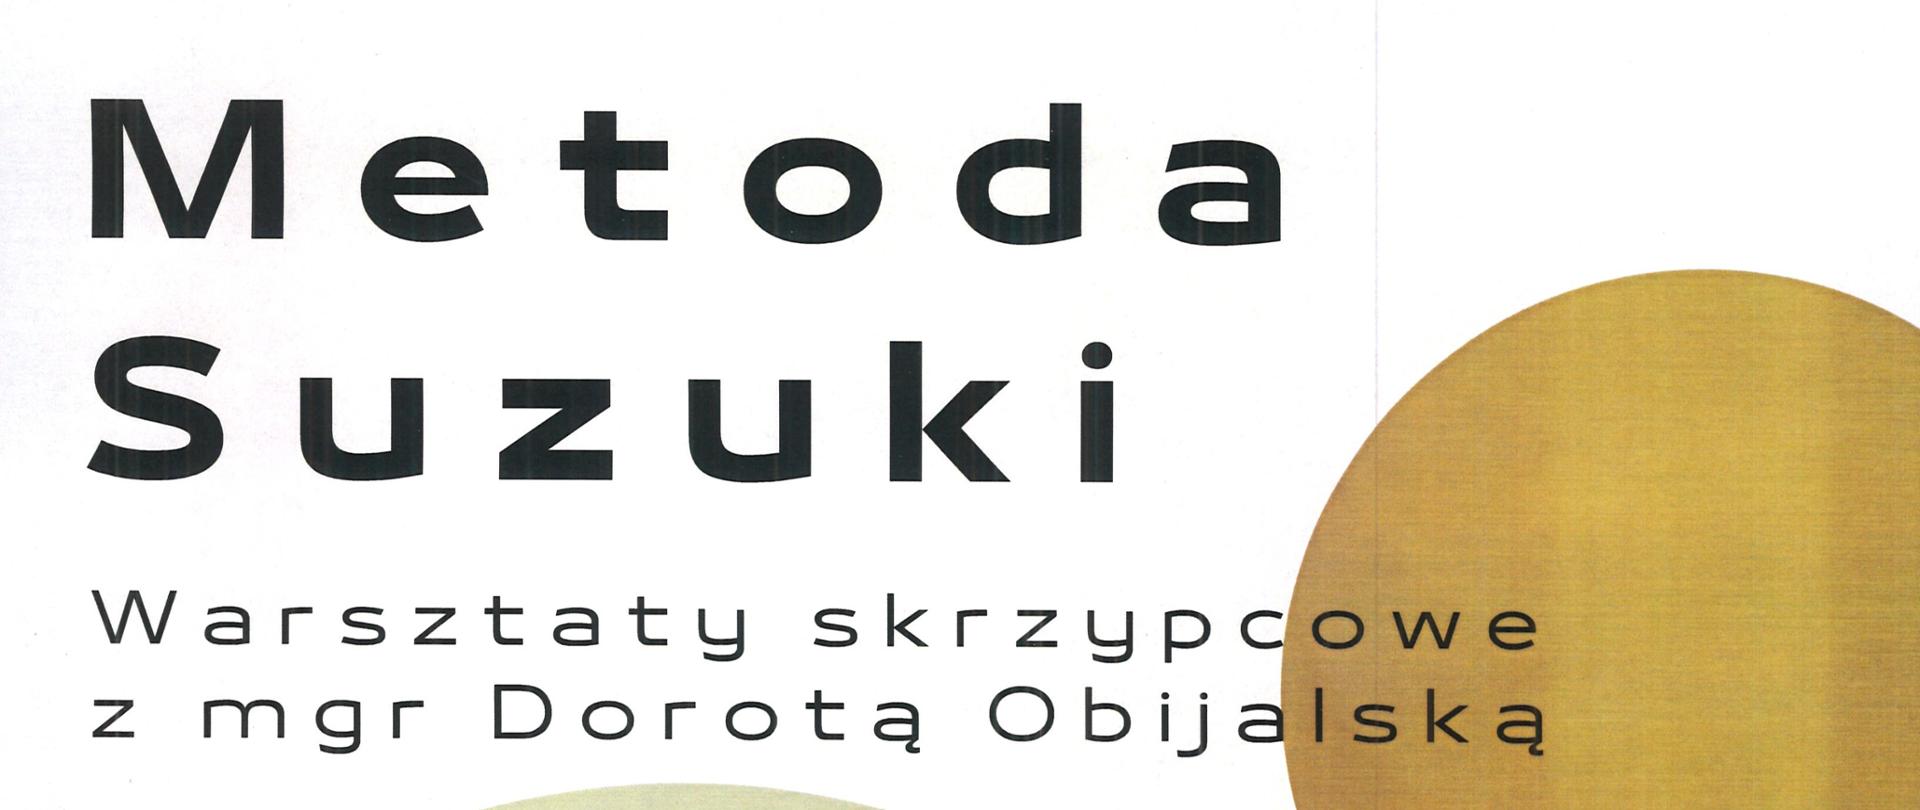 Plakat z wydarzeniem - warsztaty skrzypcowe - metoda Suzuki z p. mgr Dorotą Obijalską, które odbędą się w ZPSM w Dębicy w dniu 8 maja 2023r.; napisy na plakacie są w kolorze czarnym,, data wydarzenia oraz napis Metoda Suzuki są pogrubione, po prawej stronie plakatu umieszczono nutę a po lewej umieszczono fotografię prowadzącej 